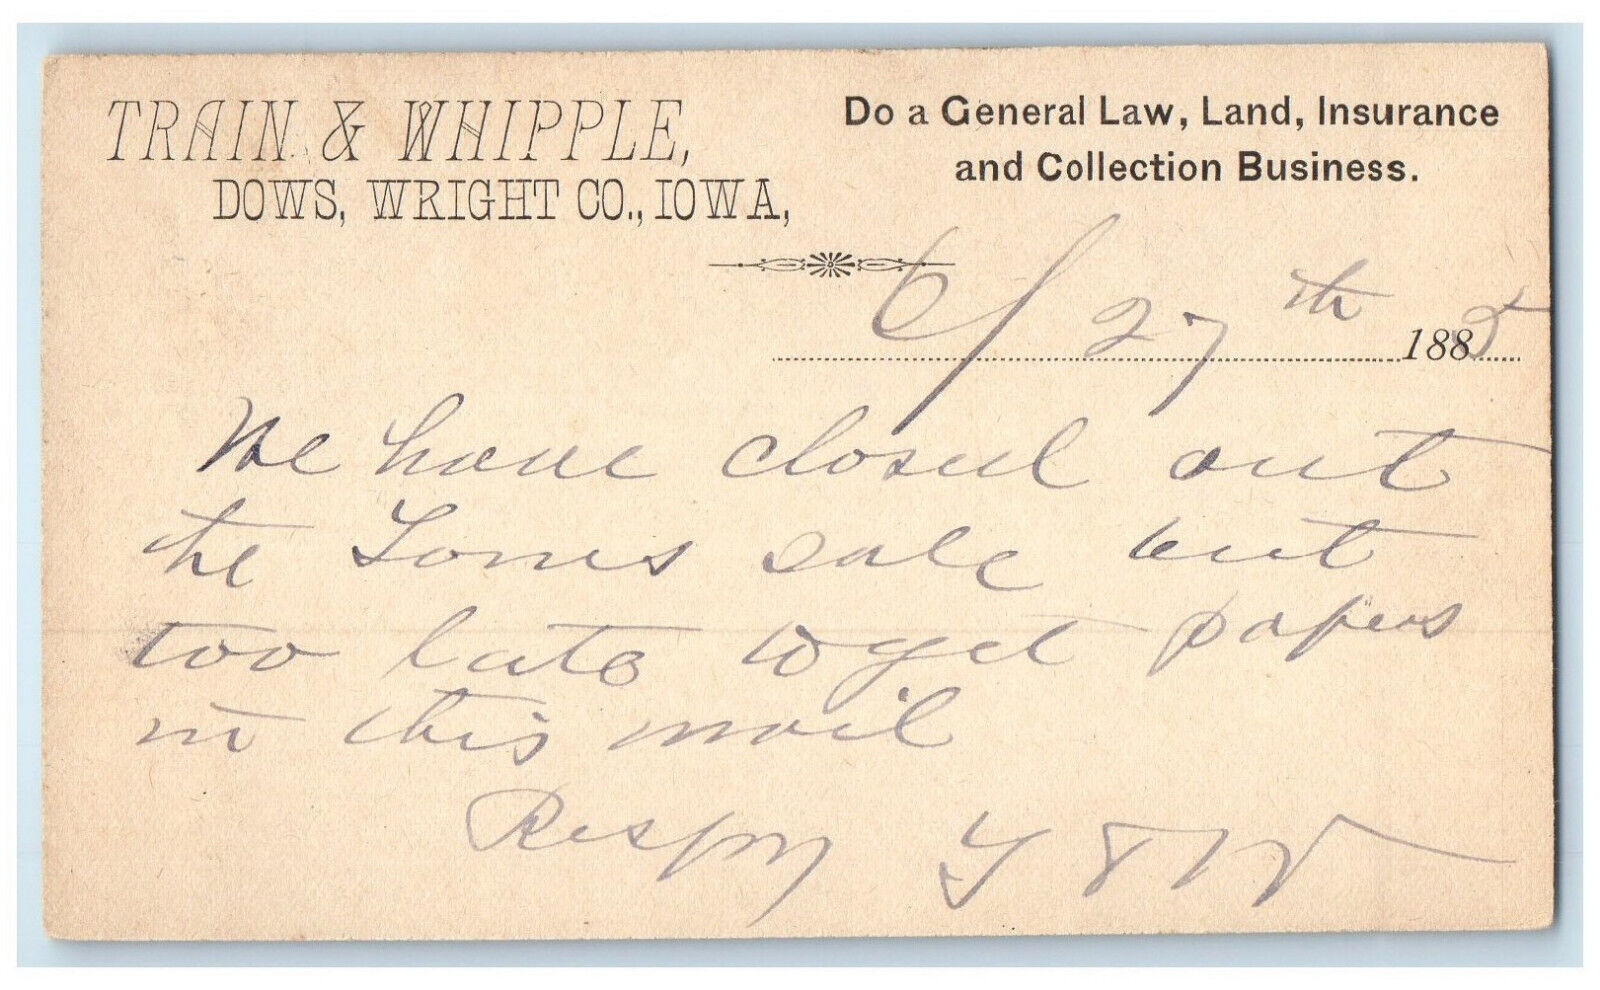 1885 Train & Whipple Dows Wright Co. Iowa IA Iowa Falls IA Postal Card